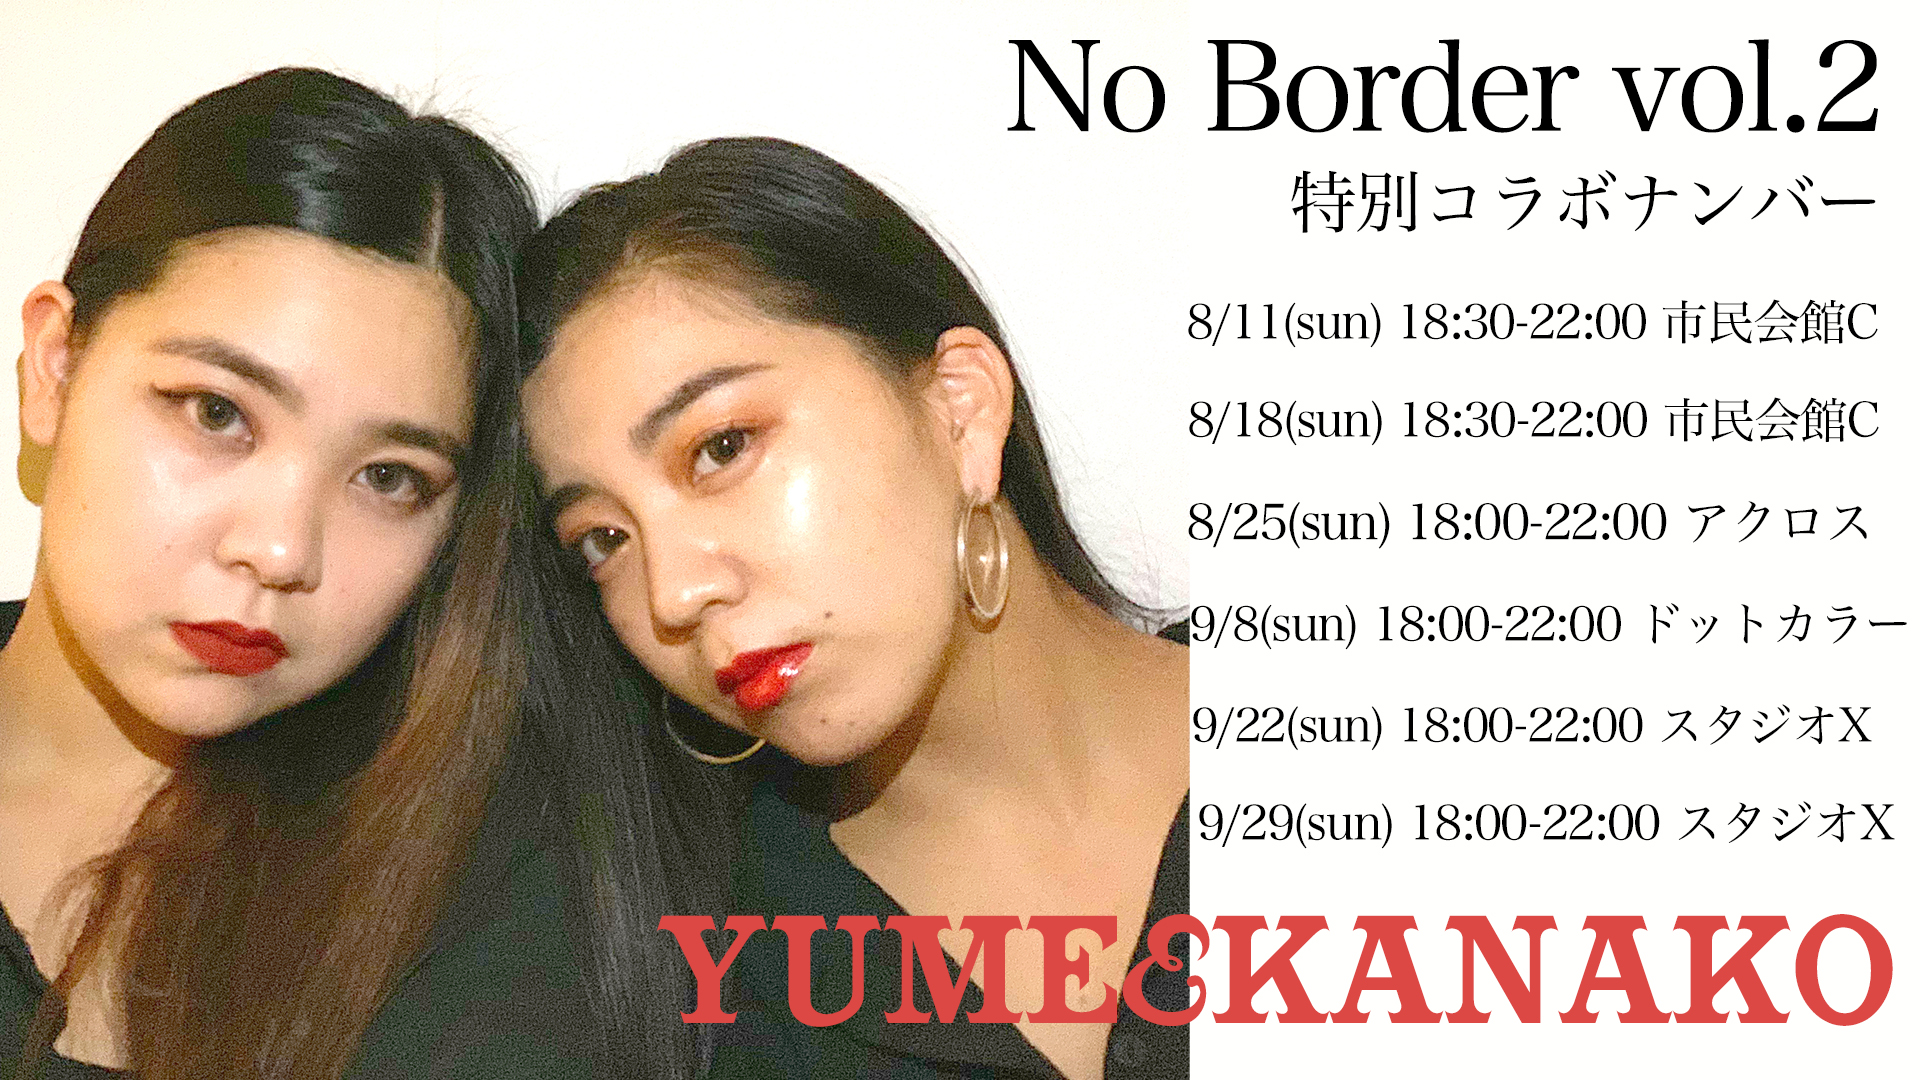 前回大好評！「YUME&KANAKO」がNo Border vol.2に復活！福岡でダンスを頑張っている方に挑戦してほしいナンバー！